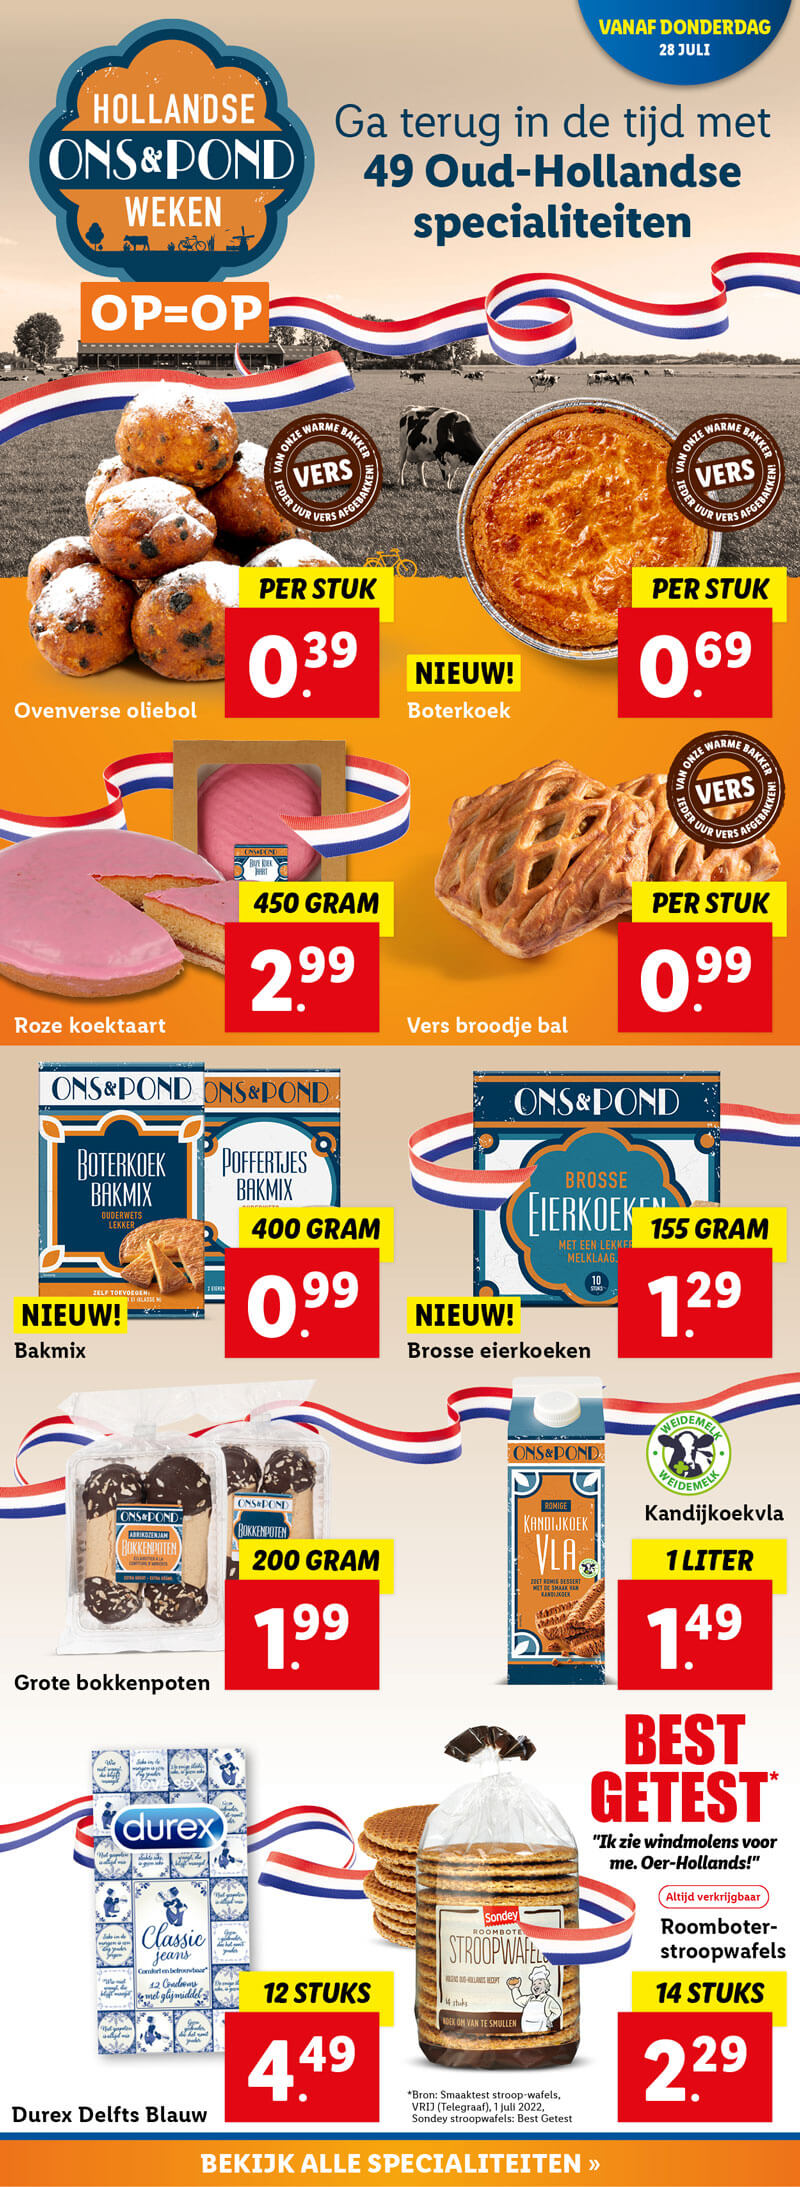 49 Oud-Hollandse specialiteiten